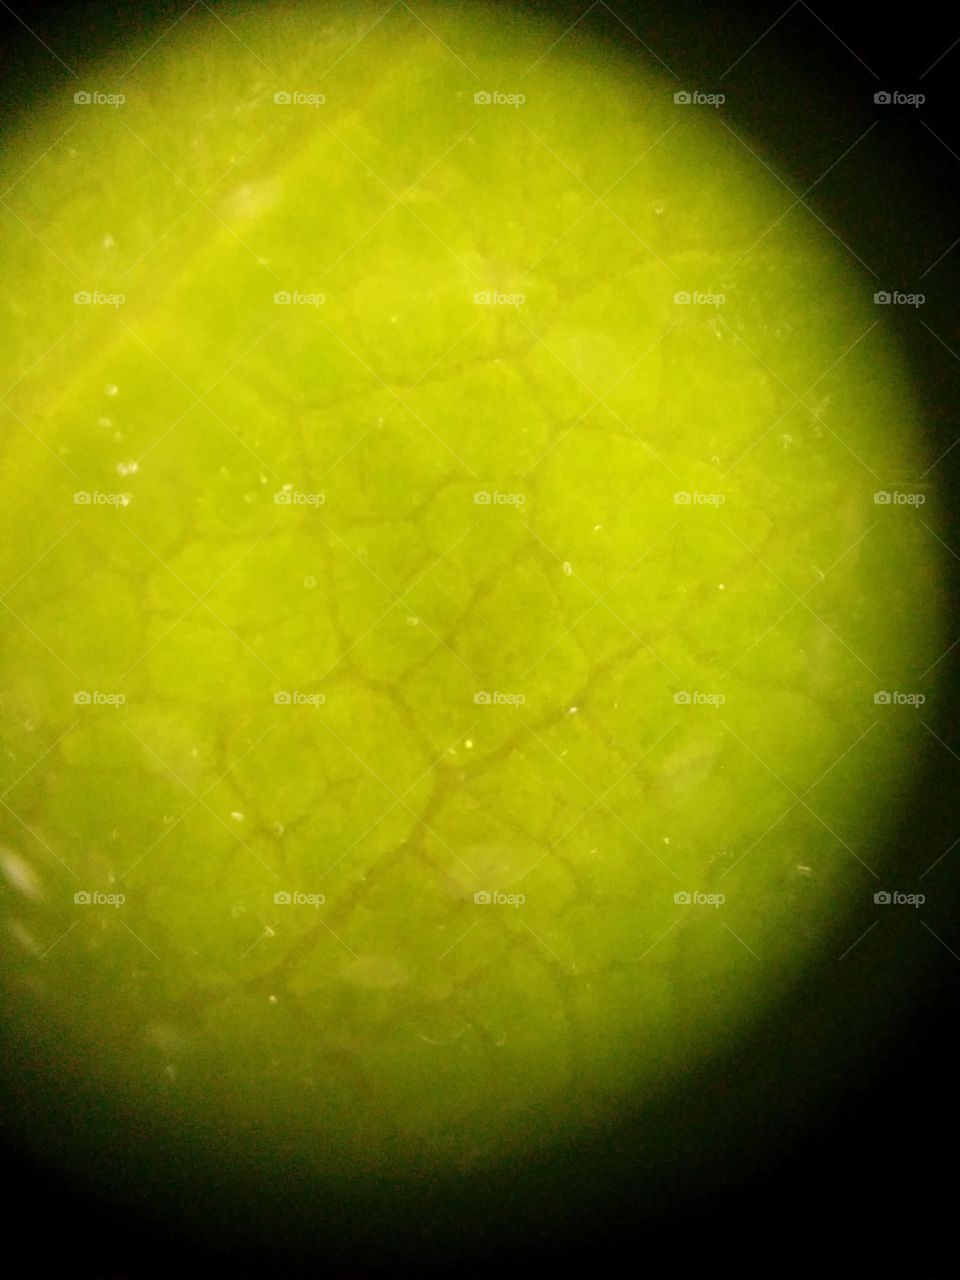 Leaf micro